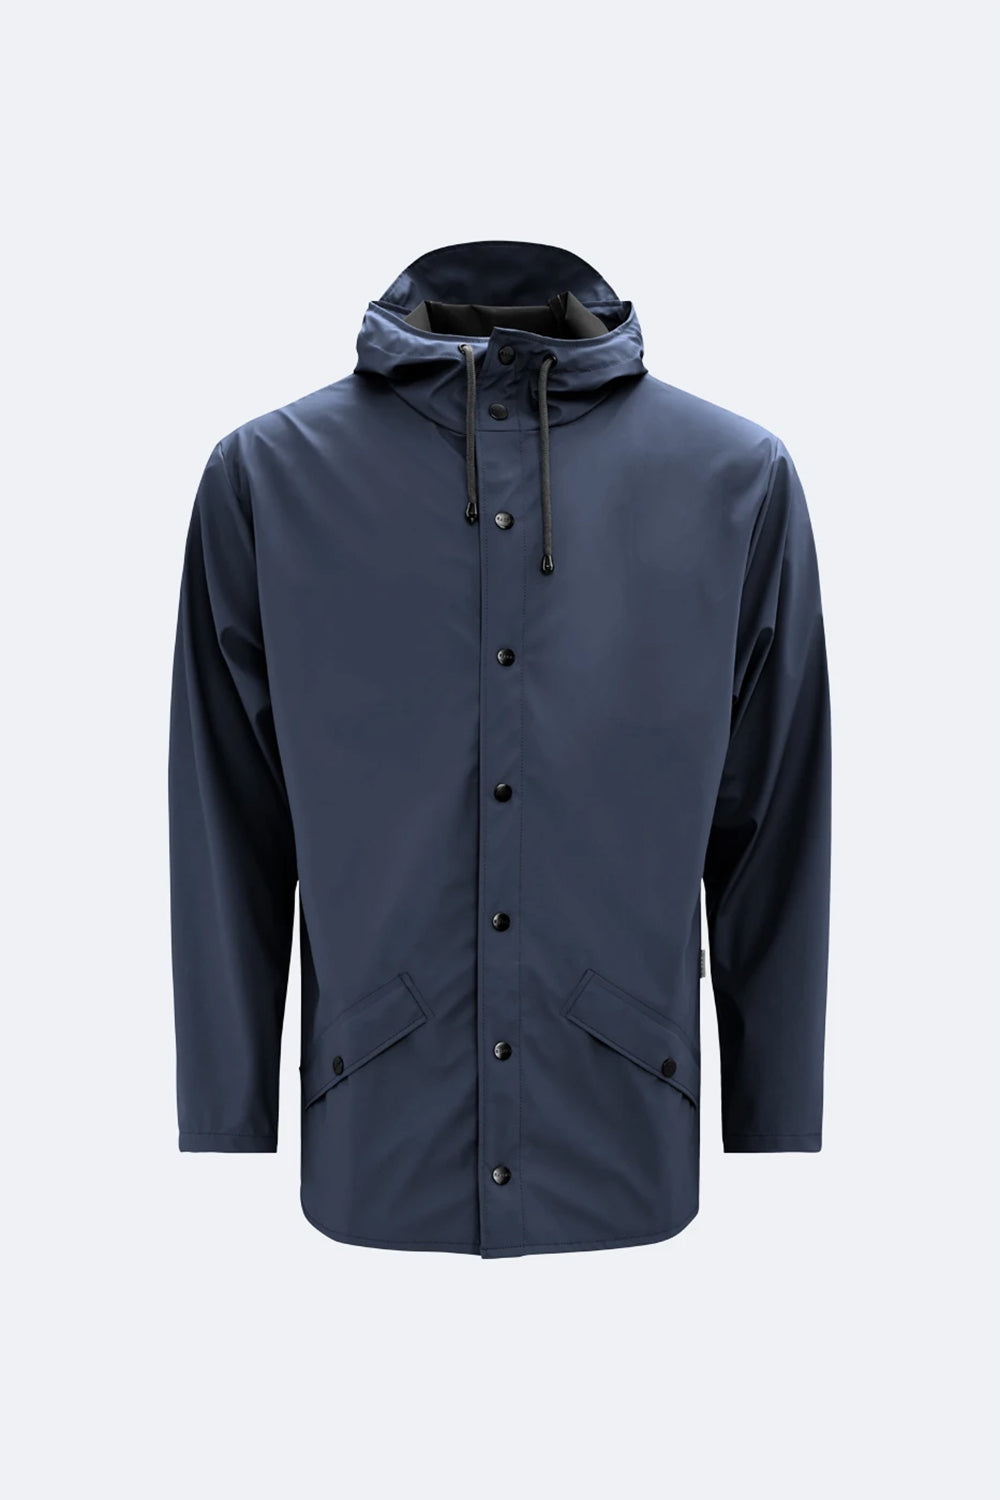 Rains Jacket (Navy Blue) | Number Six